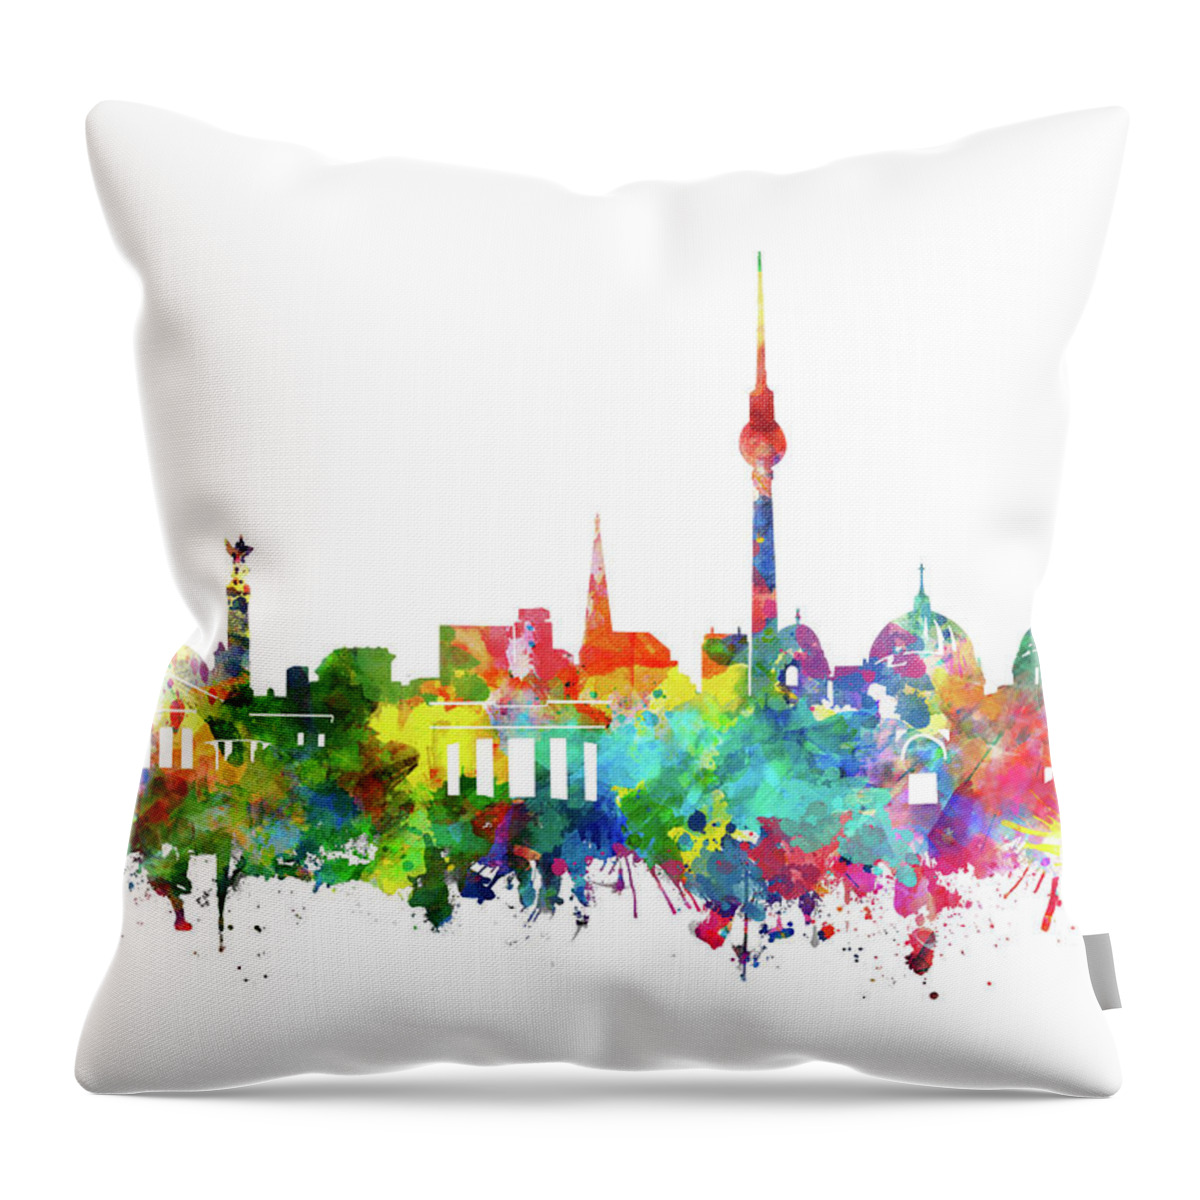 Berlin Throw Pillow featuring the digital art Berlin City Skyline Watercolor by Bekim M